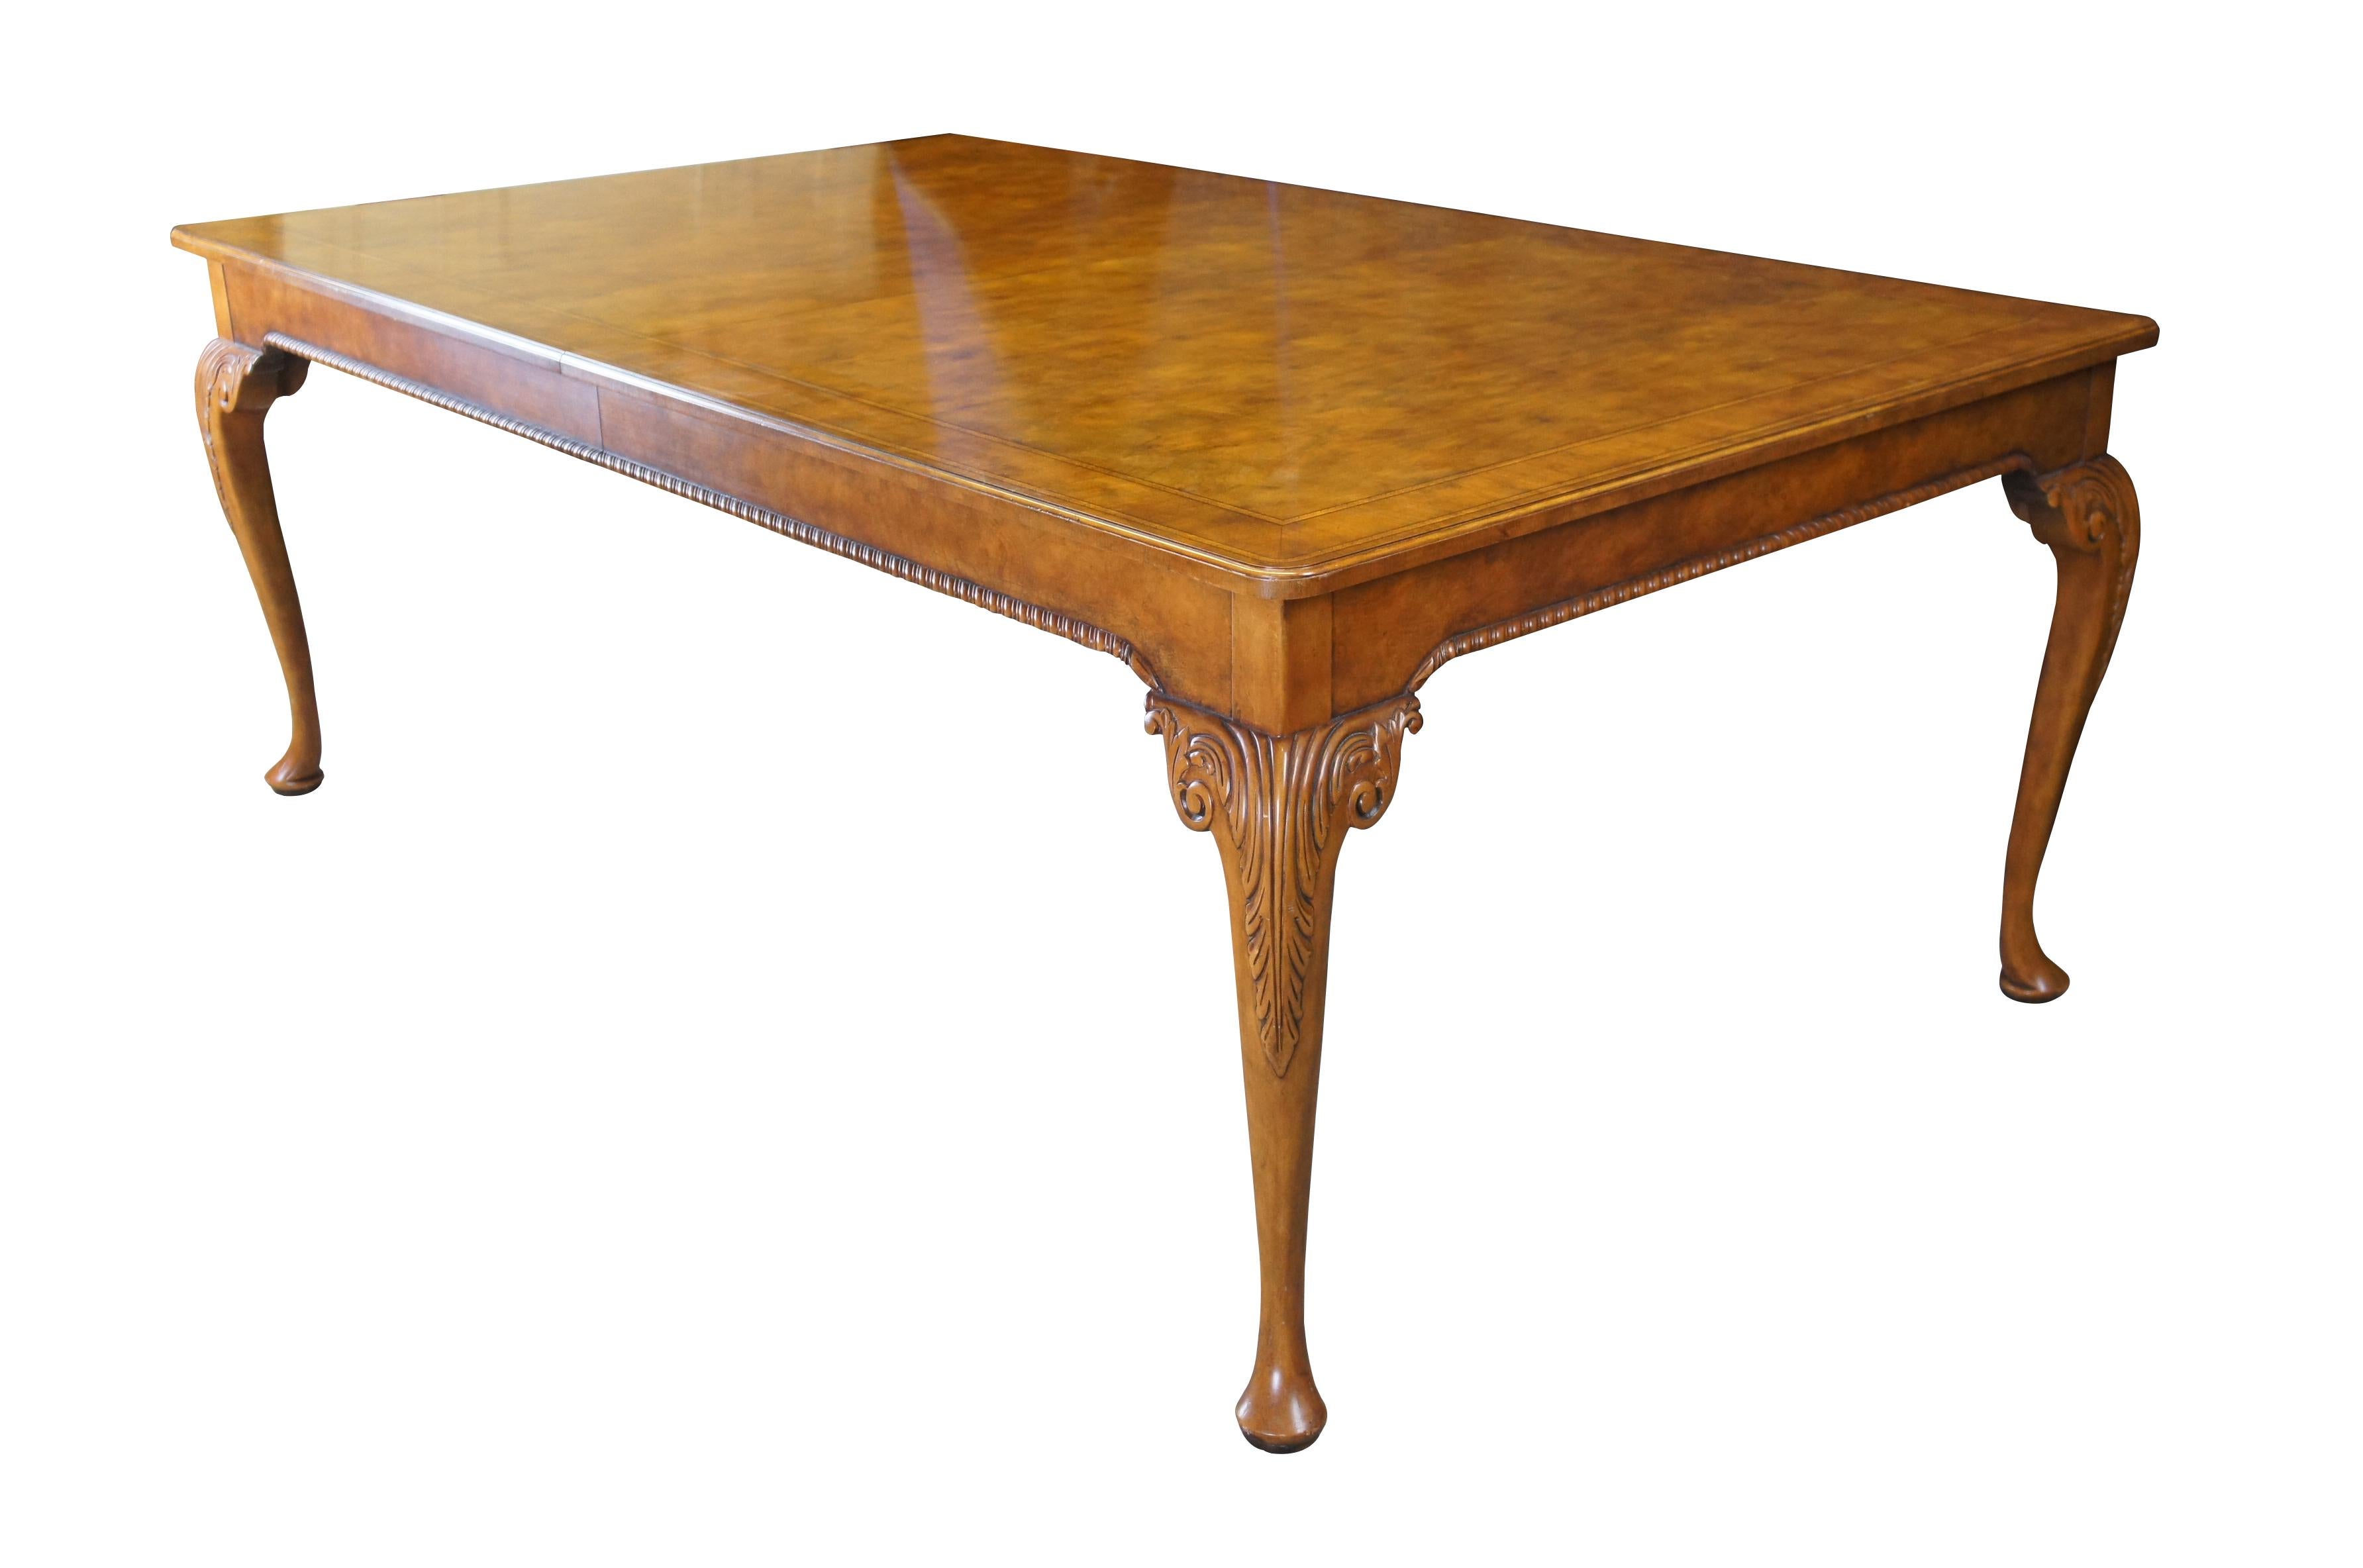 Ein profunder Esstisch aus der bemerkenswerten Stately Homes Collection von Baker Furniture, ca. 1980er Jahre.  Inspiriert vom englischen Chippendale- und Queen Anne-Stil.  

Der Tisch zeichnet sich durch eine atemberaubende Kombination aus Nussbaum